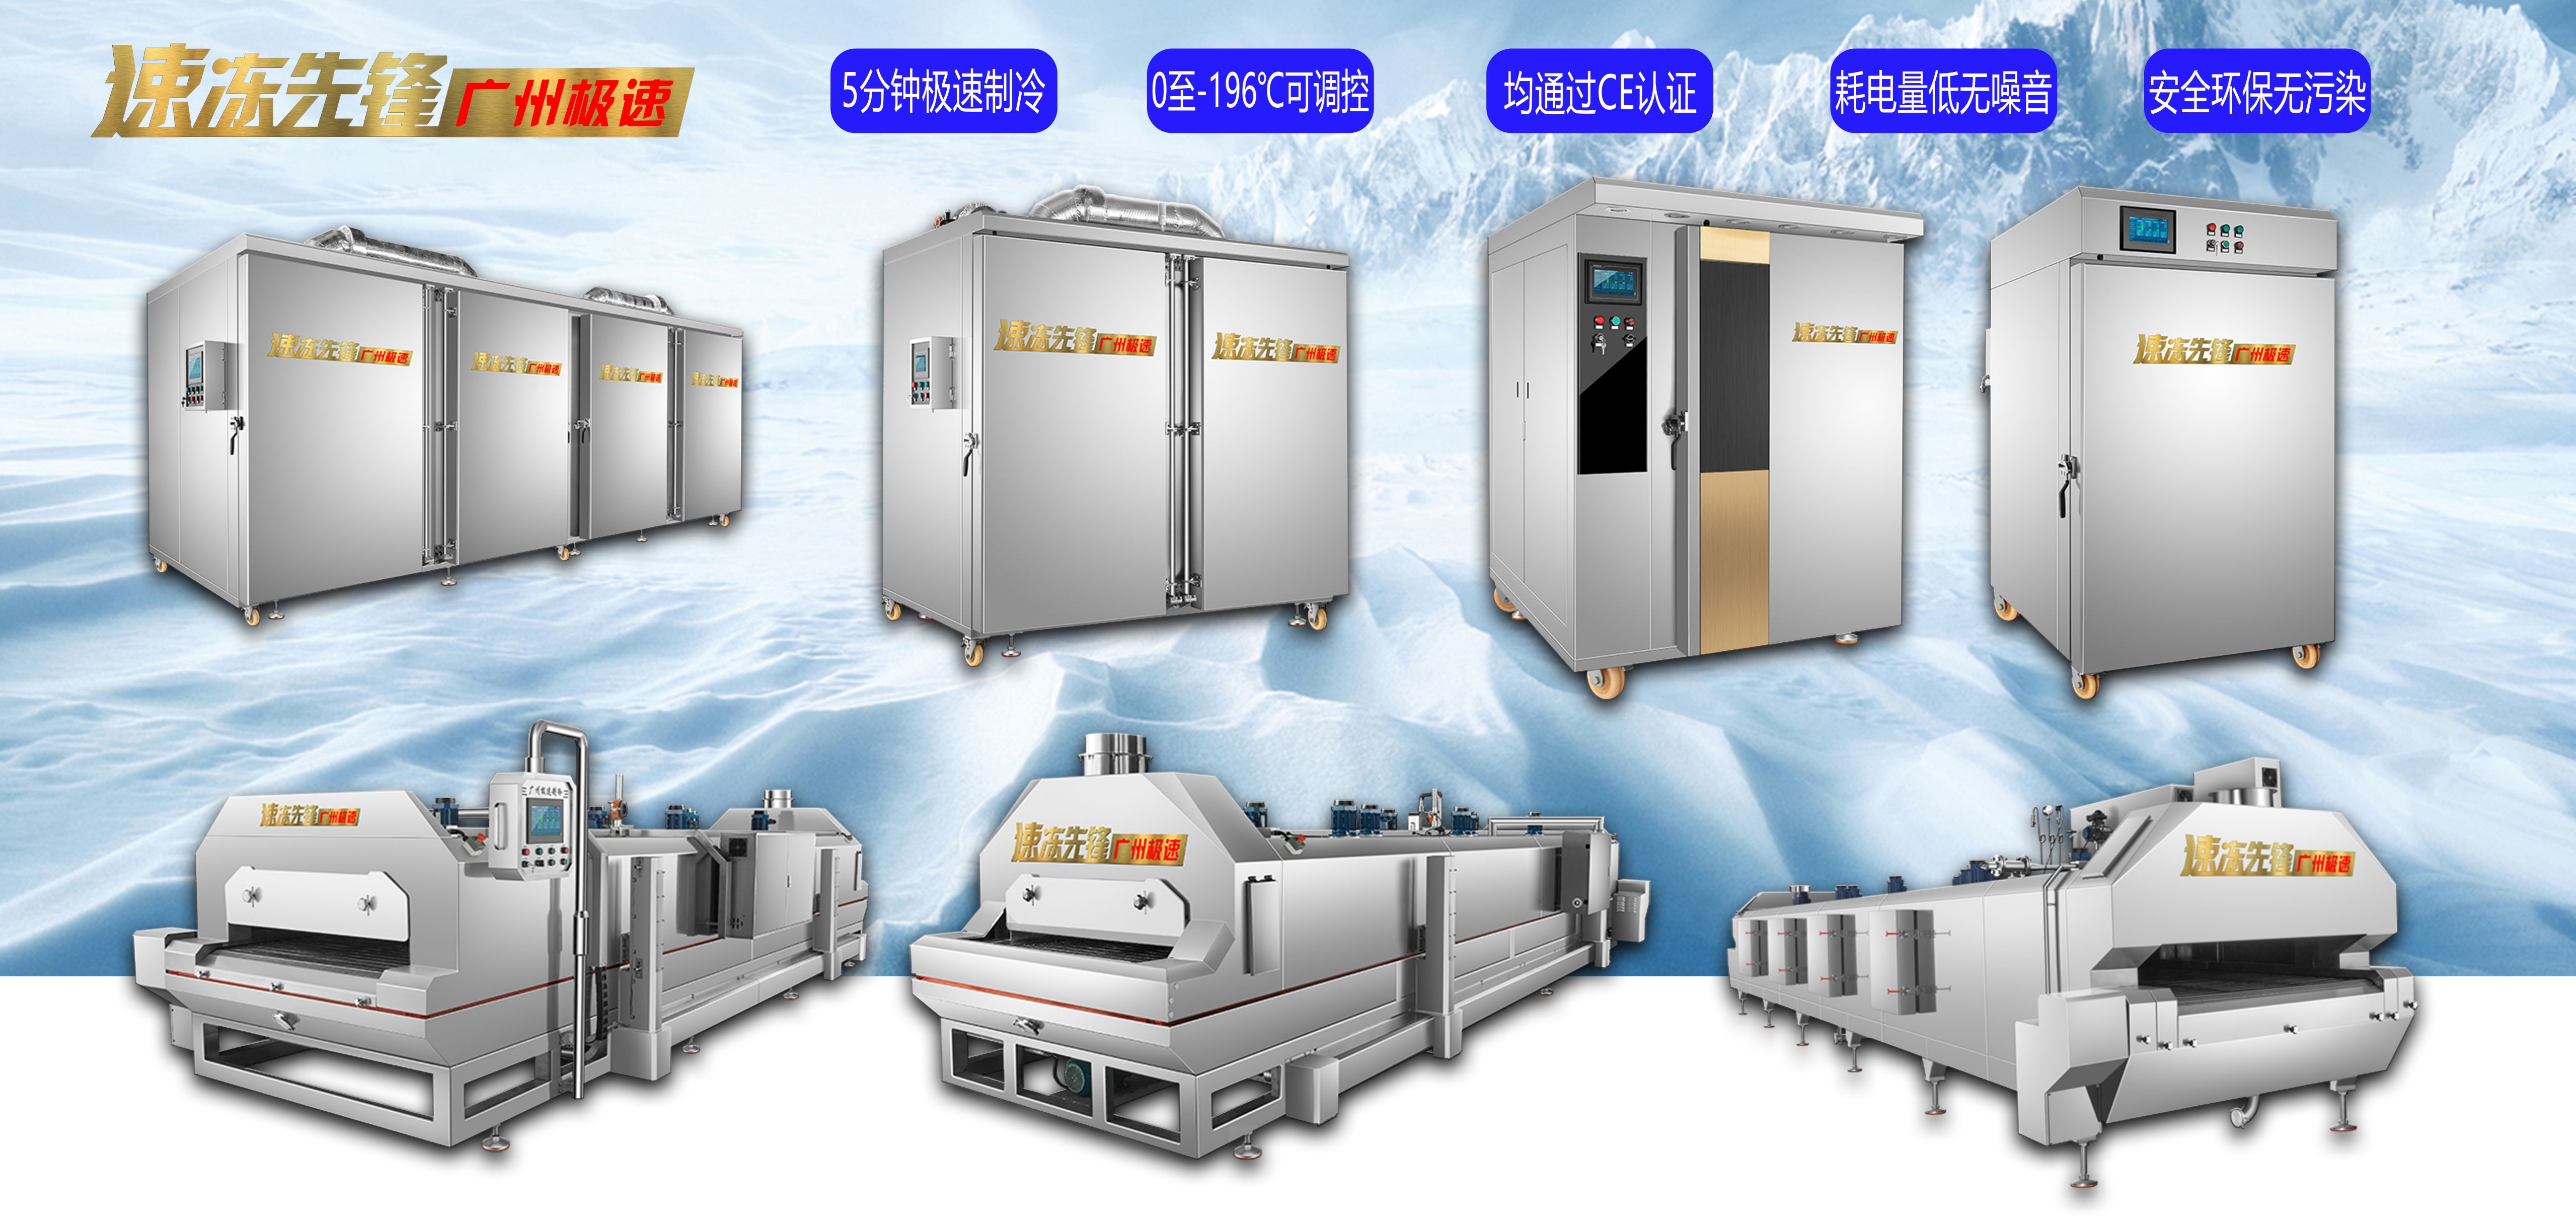 液氮速冻机是冷链中必不可少的设备